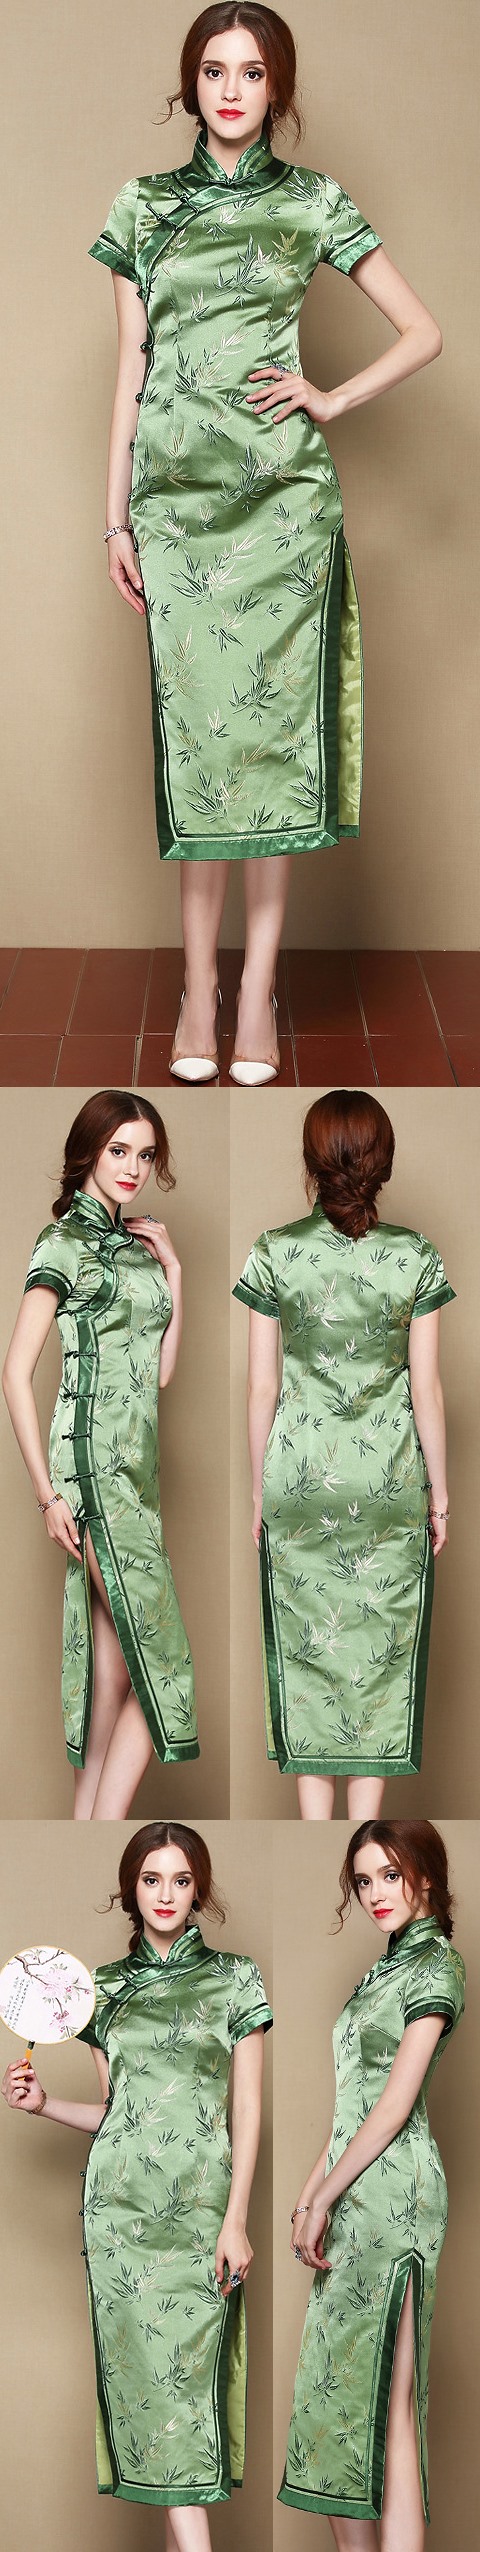 Fabric - Bamboo Brocade (Multicolor)